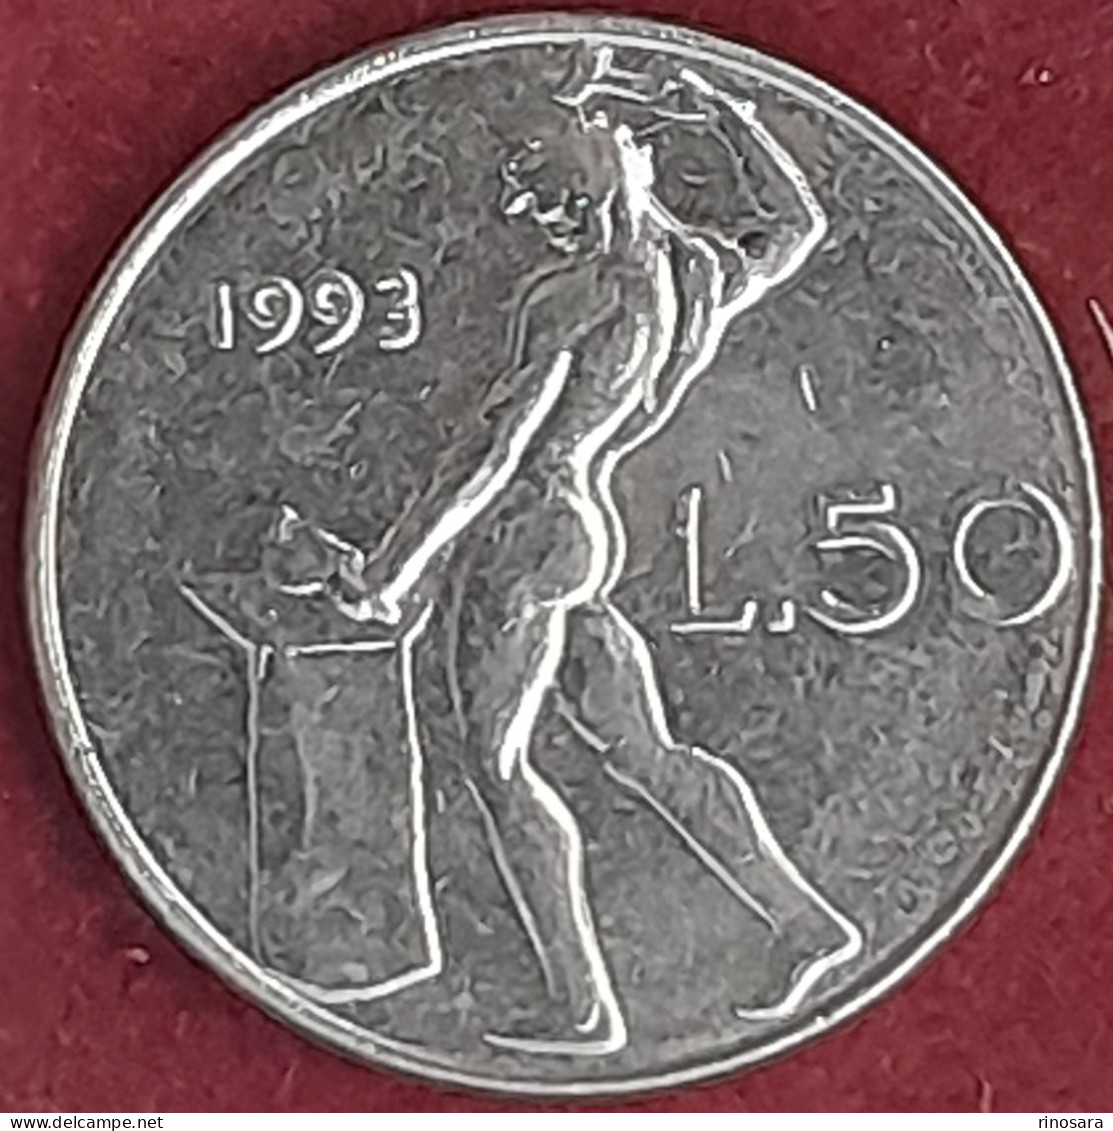 Errore Di Conio 50 Lire 1993 Repubblica Italiana - 50 Liras